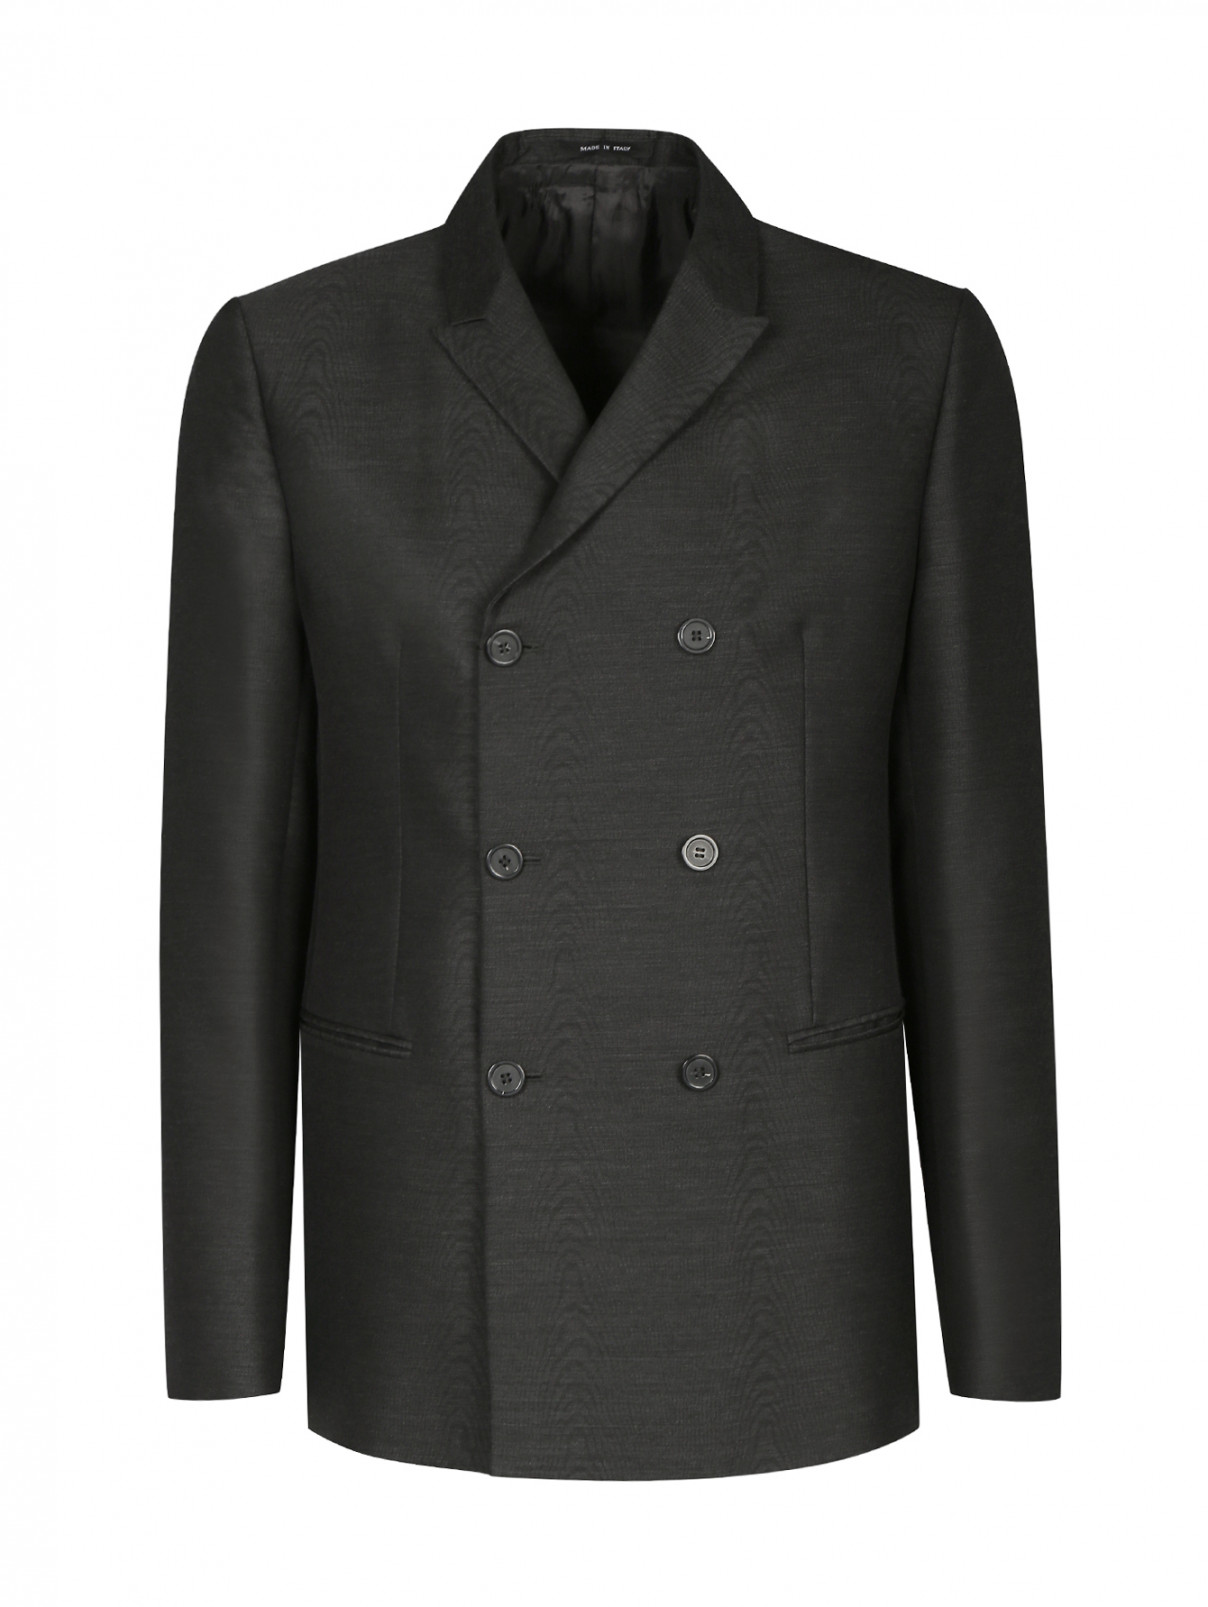 Пиджак двубортный из шерсти Emporio Armani  –  Общий вид  – Цвет:  Серый